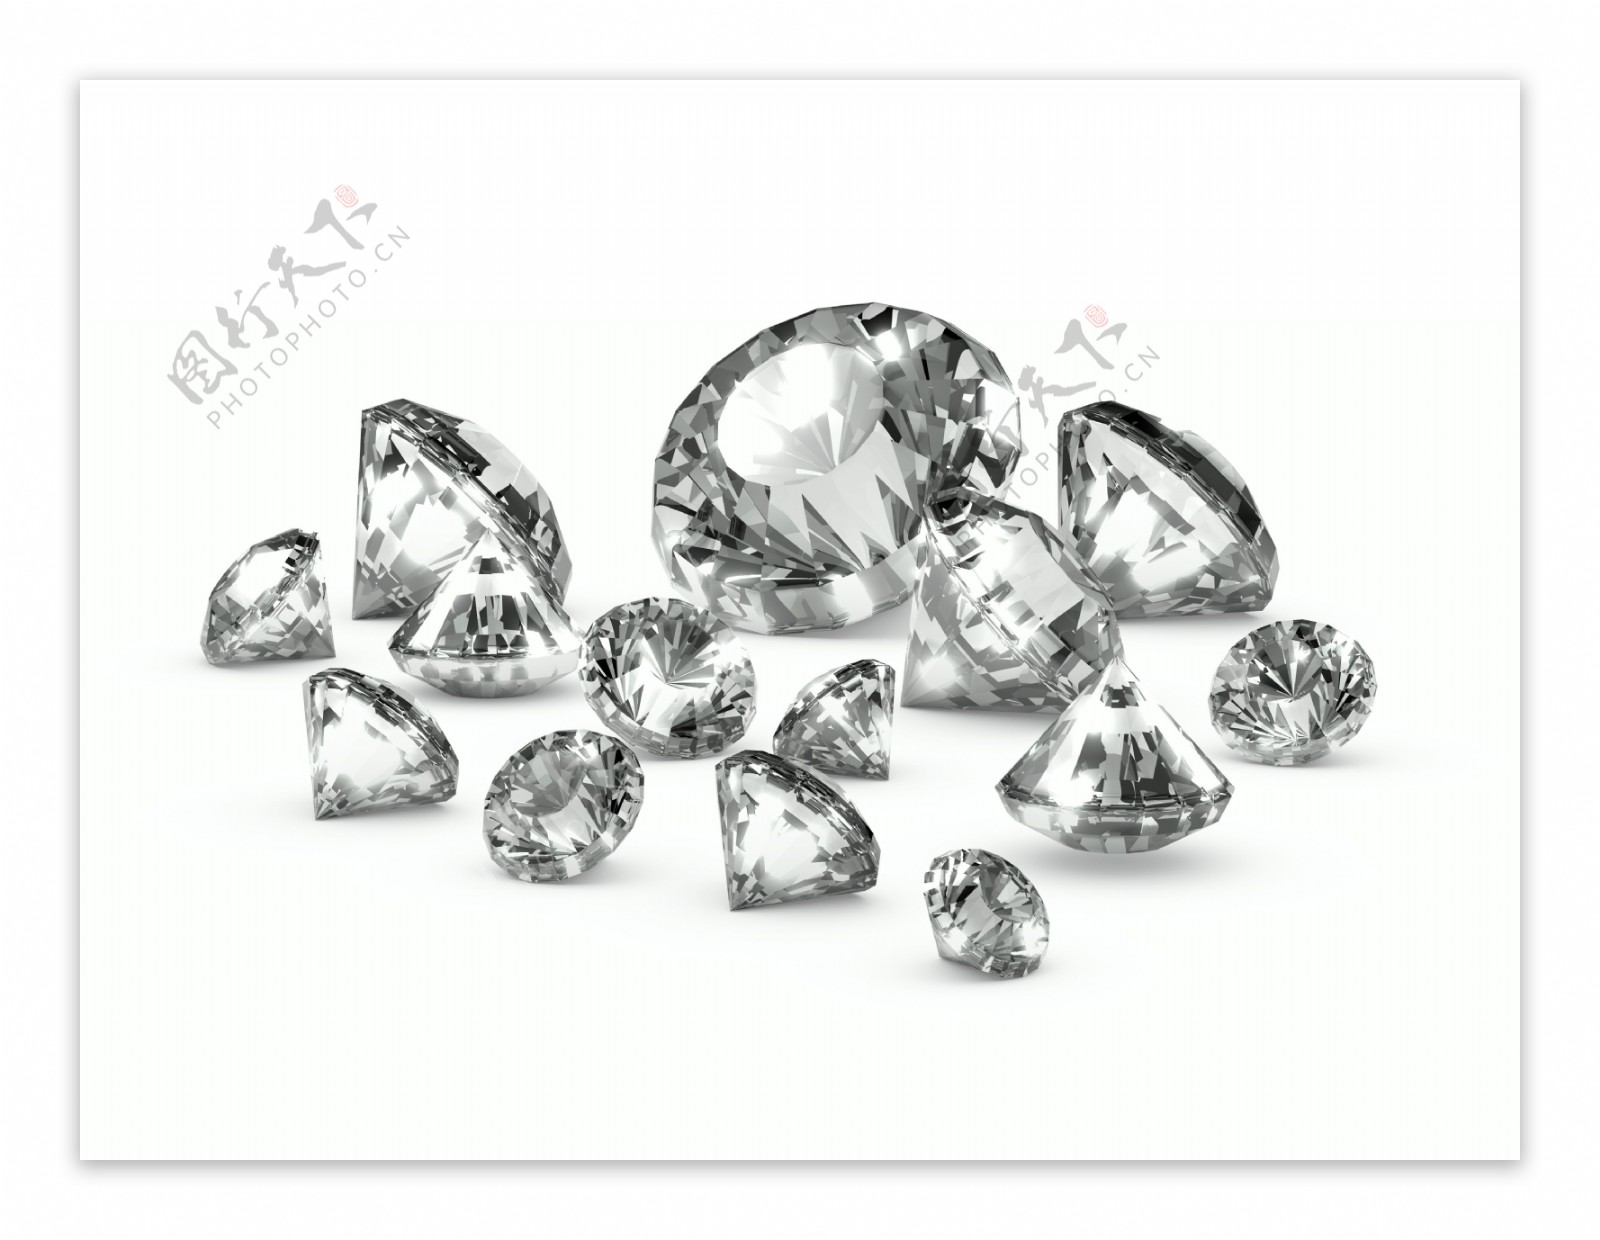 不同大小的钻石